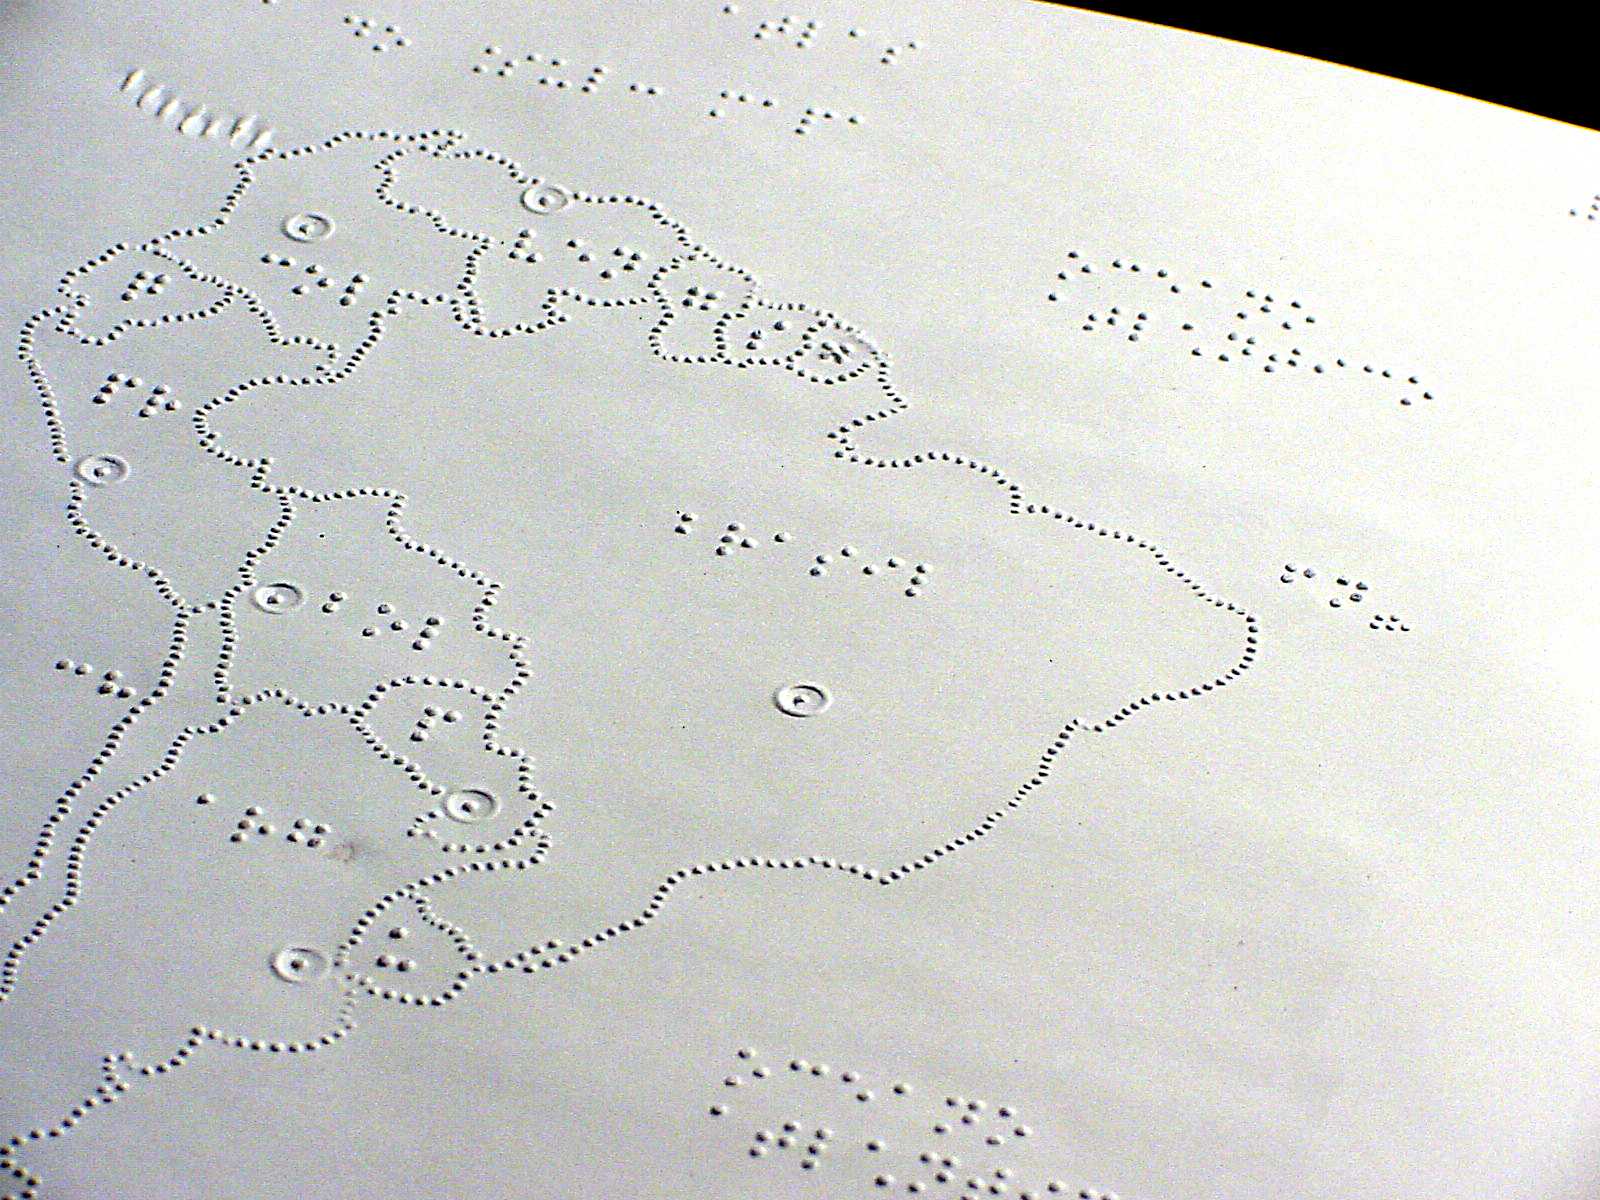 Imagem de uma página braille, com o desenho em relevo do mapa do Brasil.